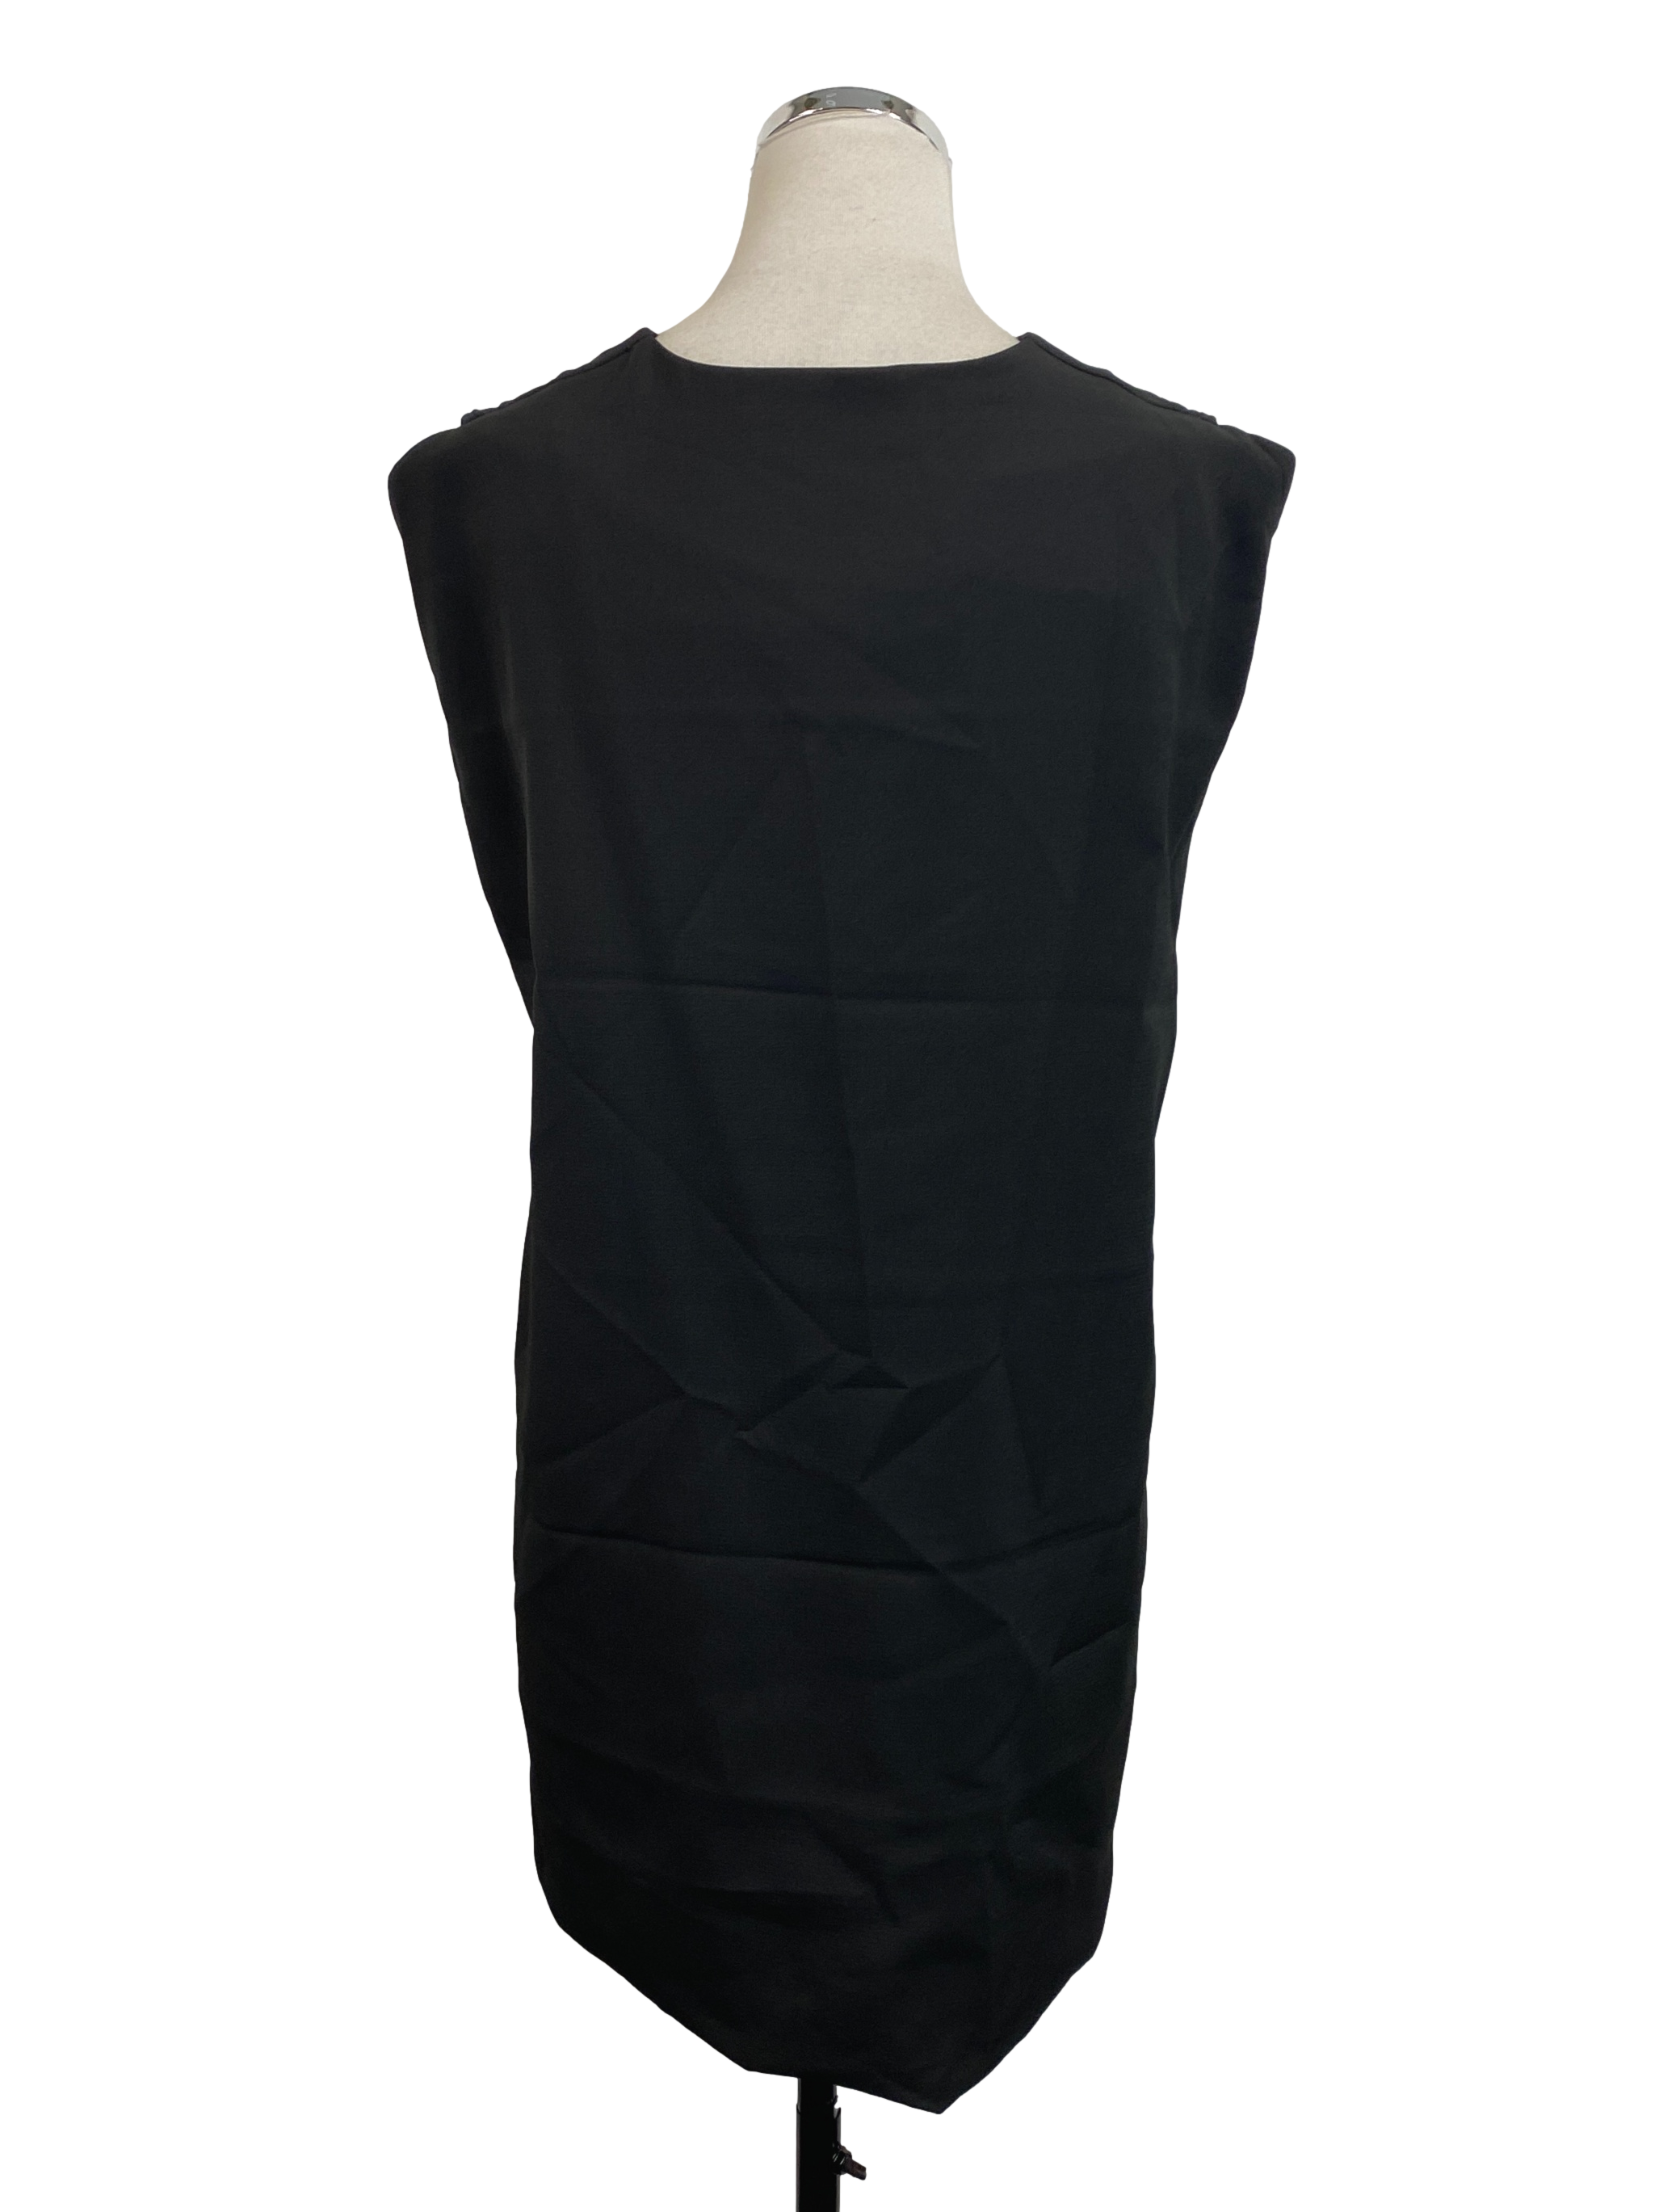 Pitch Black Patterned Cape Dress